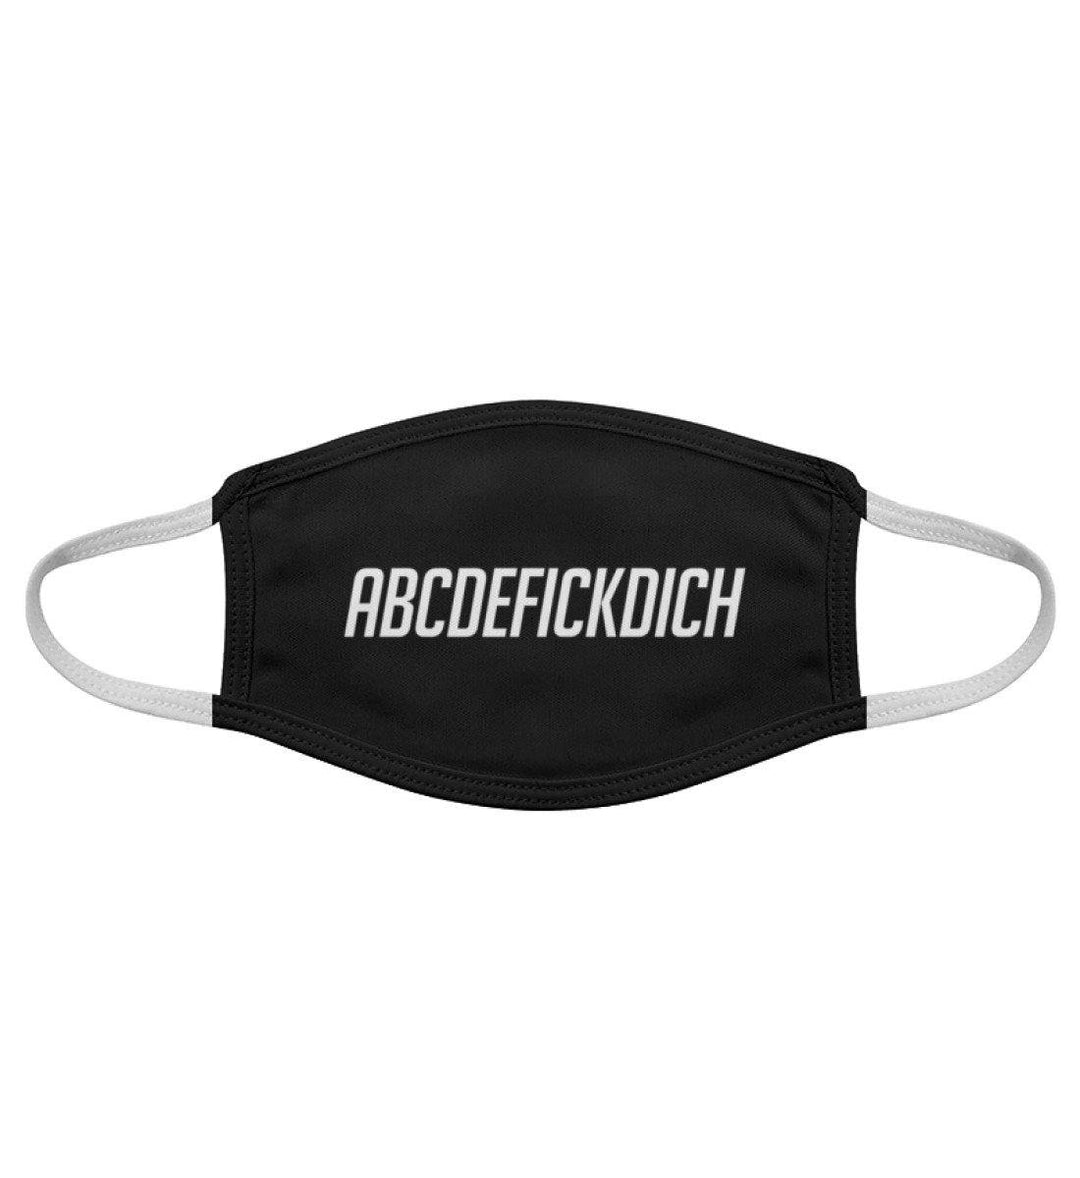 ABCDEFICKDICH - Maske  - Gesichtsmaske - Words on Shirts Sag es mit dem Mittelfinger Shirts Hoodies Sweatshirt Taschen Gymsack Spruch Sprüche Statement